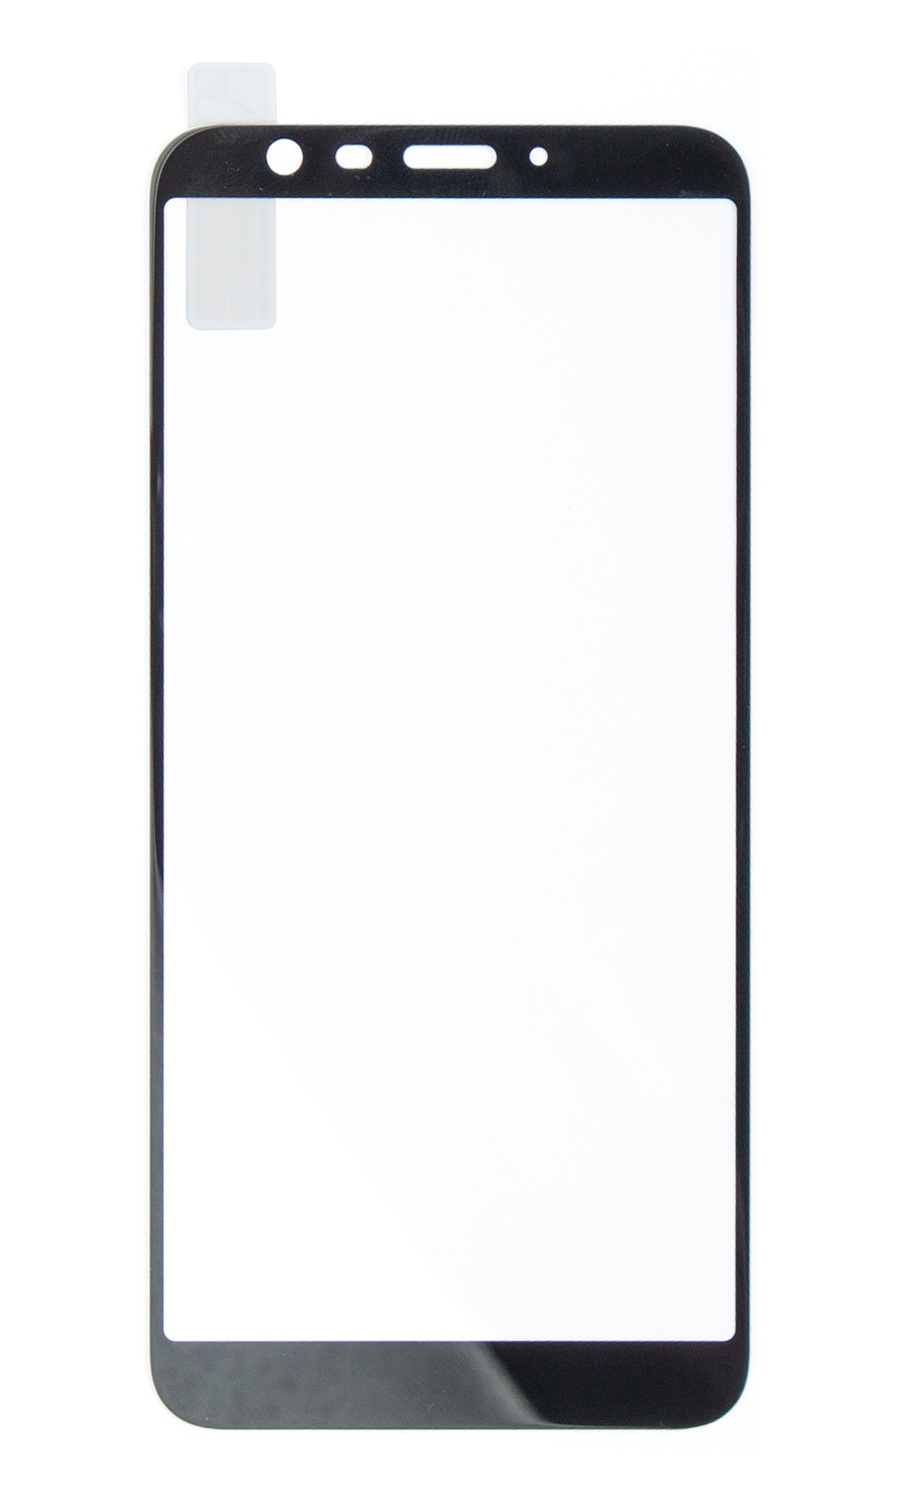 фото Защитное стекло Onext Tempered Glass для телефона Meizu M8c, цвет прозрачный, черный